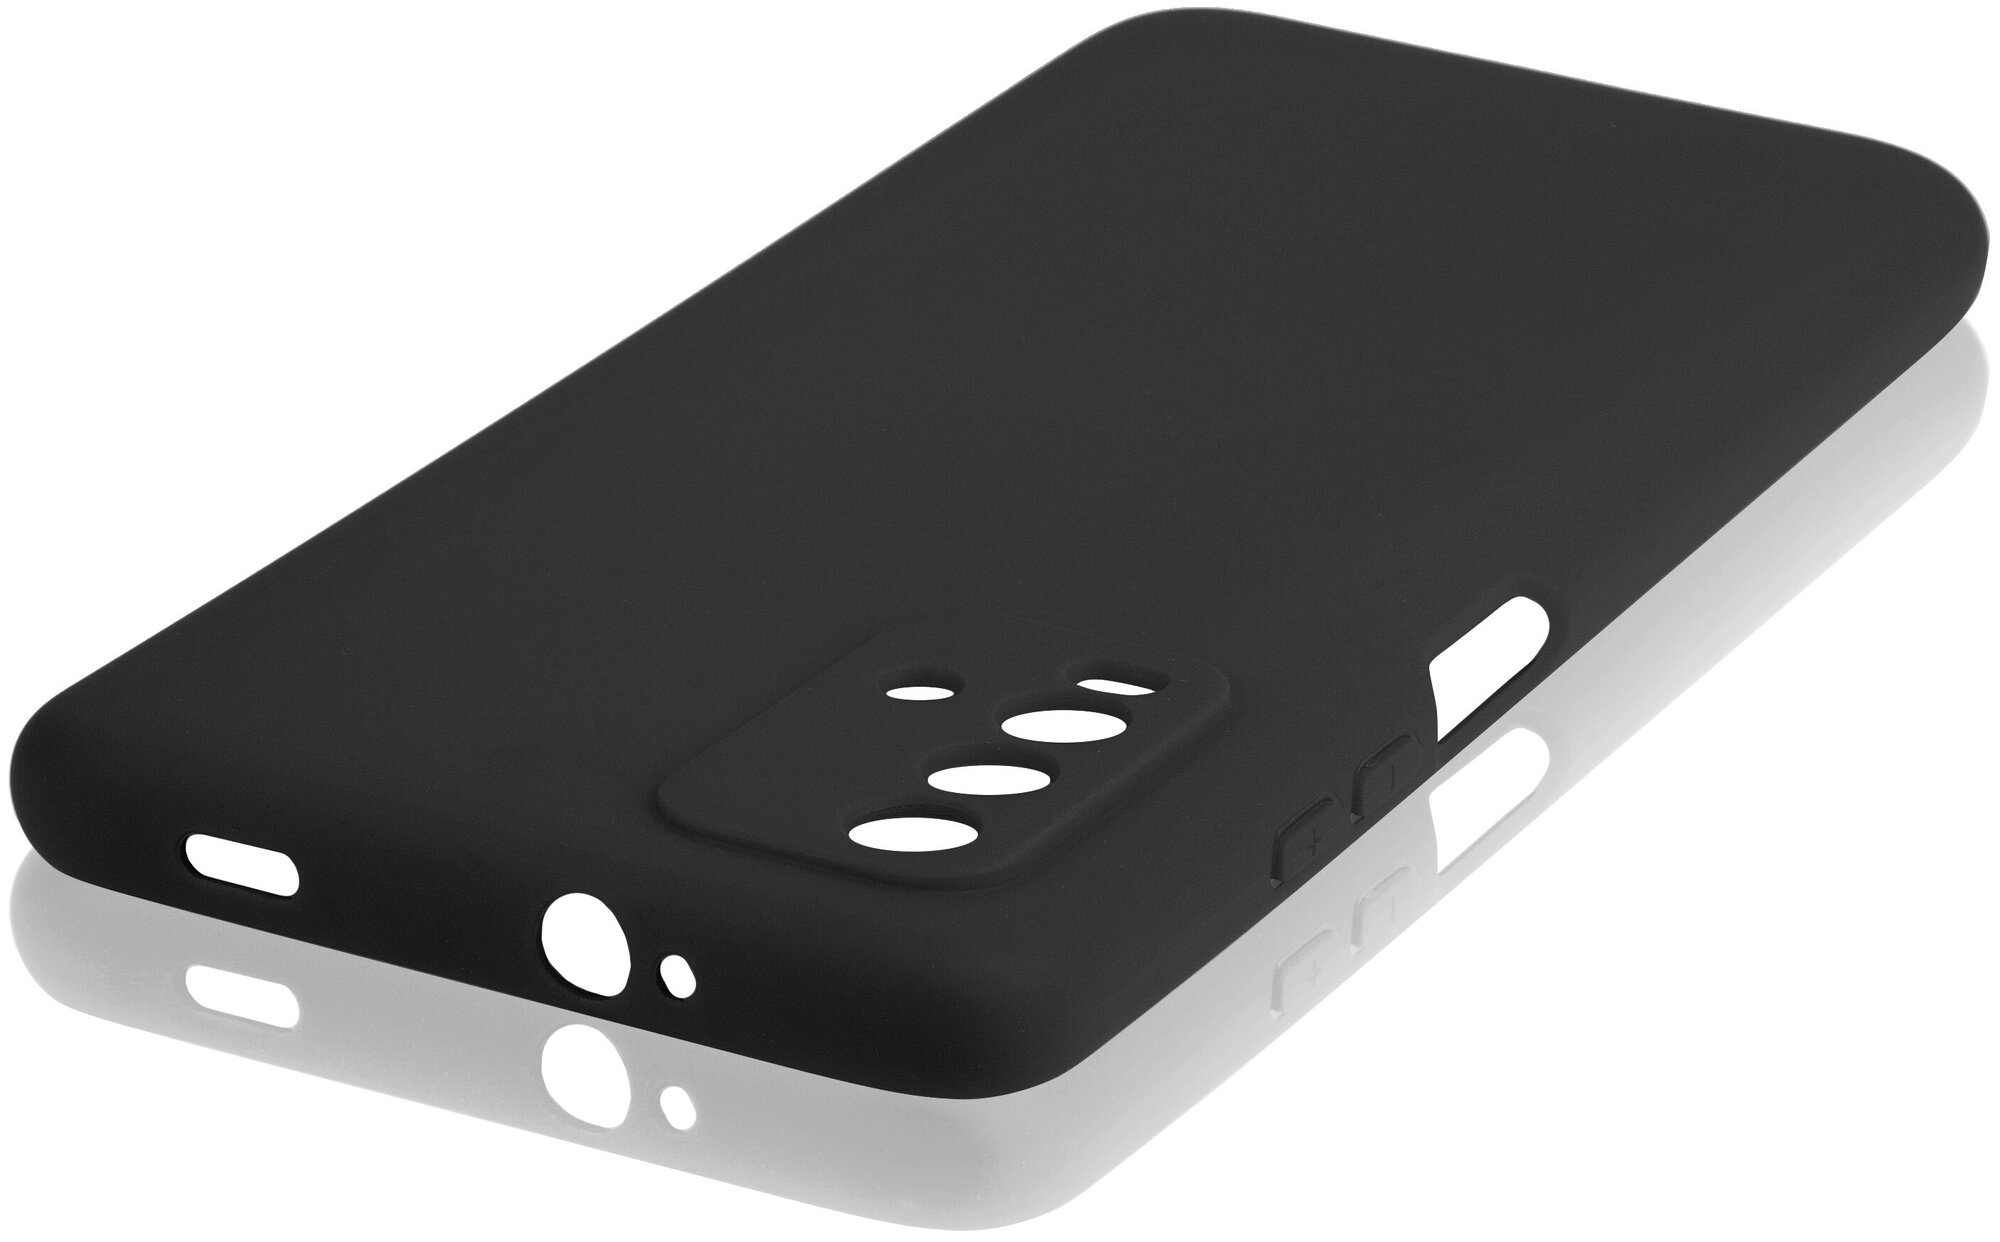 Чехол ROSCO для Xiaomi Redmi 9T, Poco M3 (Сяоми Редми 9Т, Поко м3), бортик (защита) вокруг блока камеры, силиконовый чехол, черный